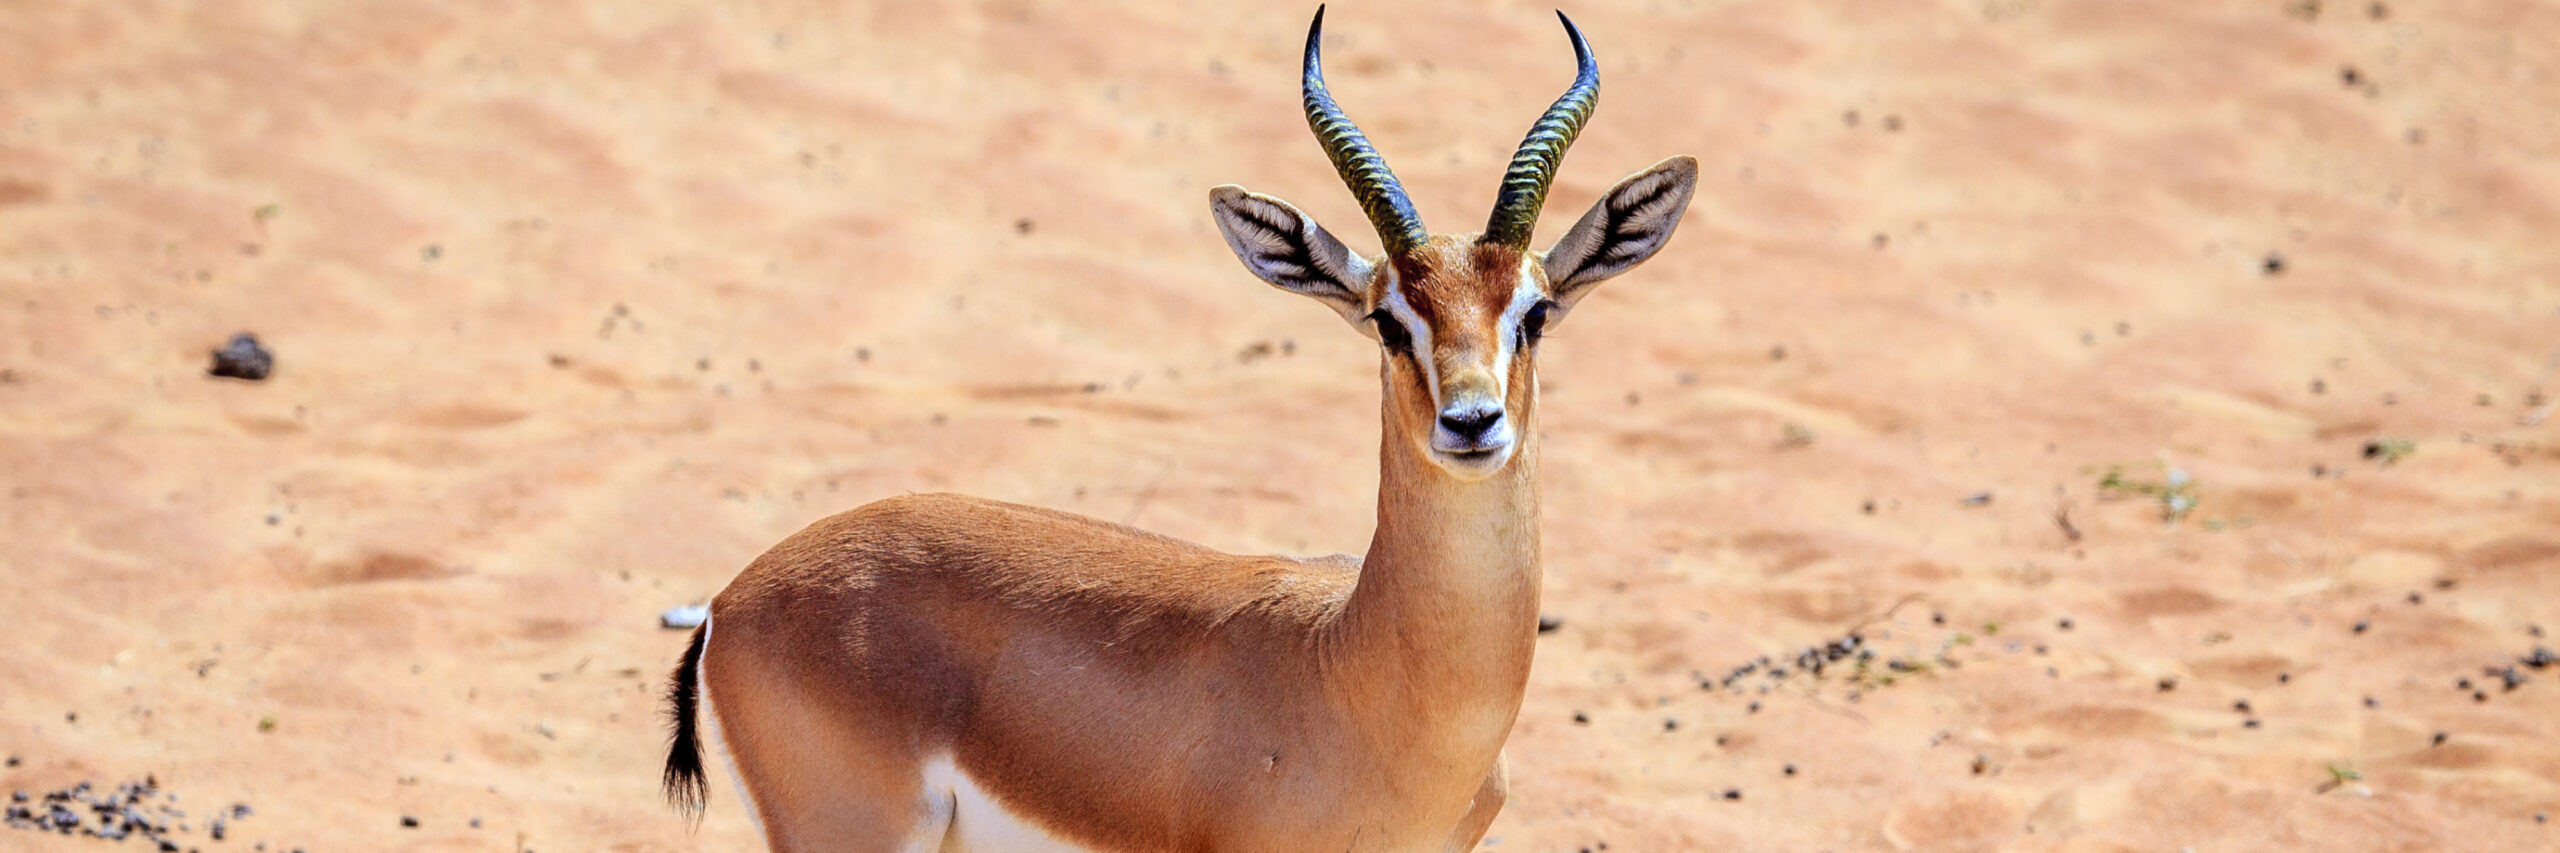 arabian-mountain-gazelle